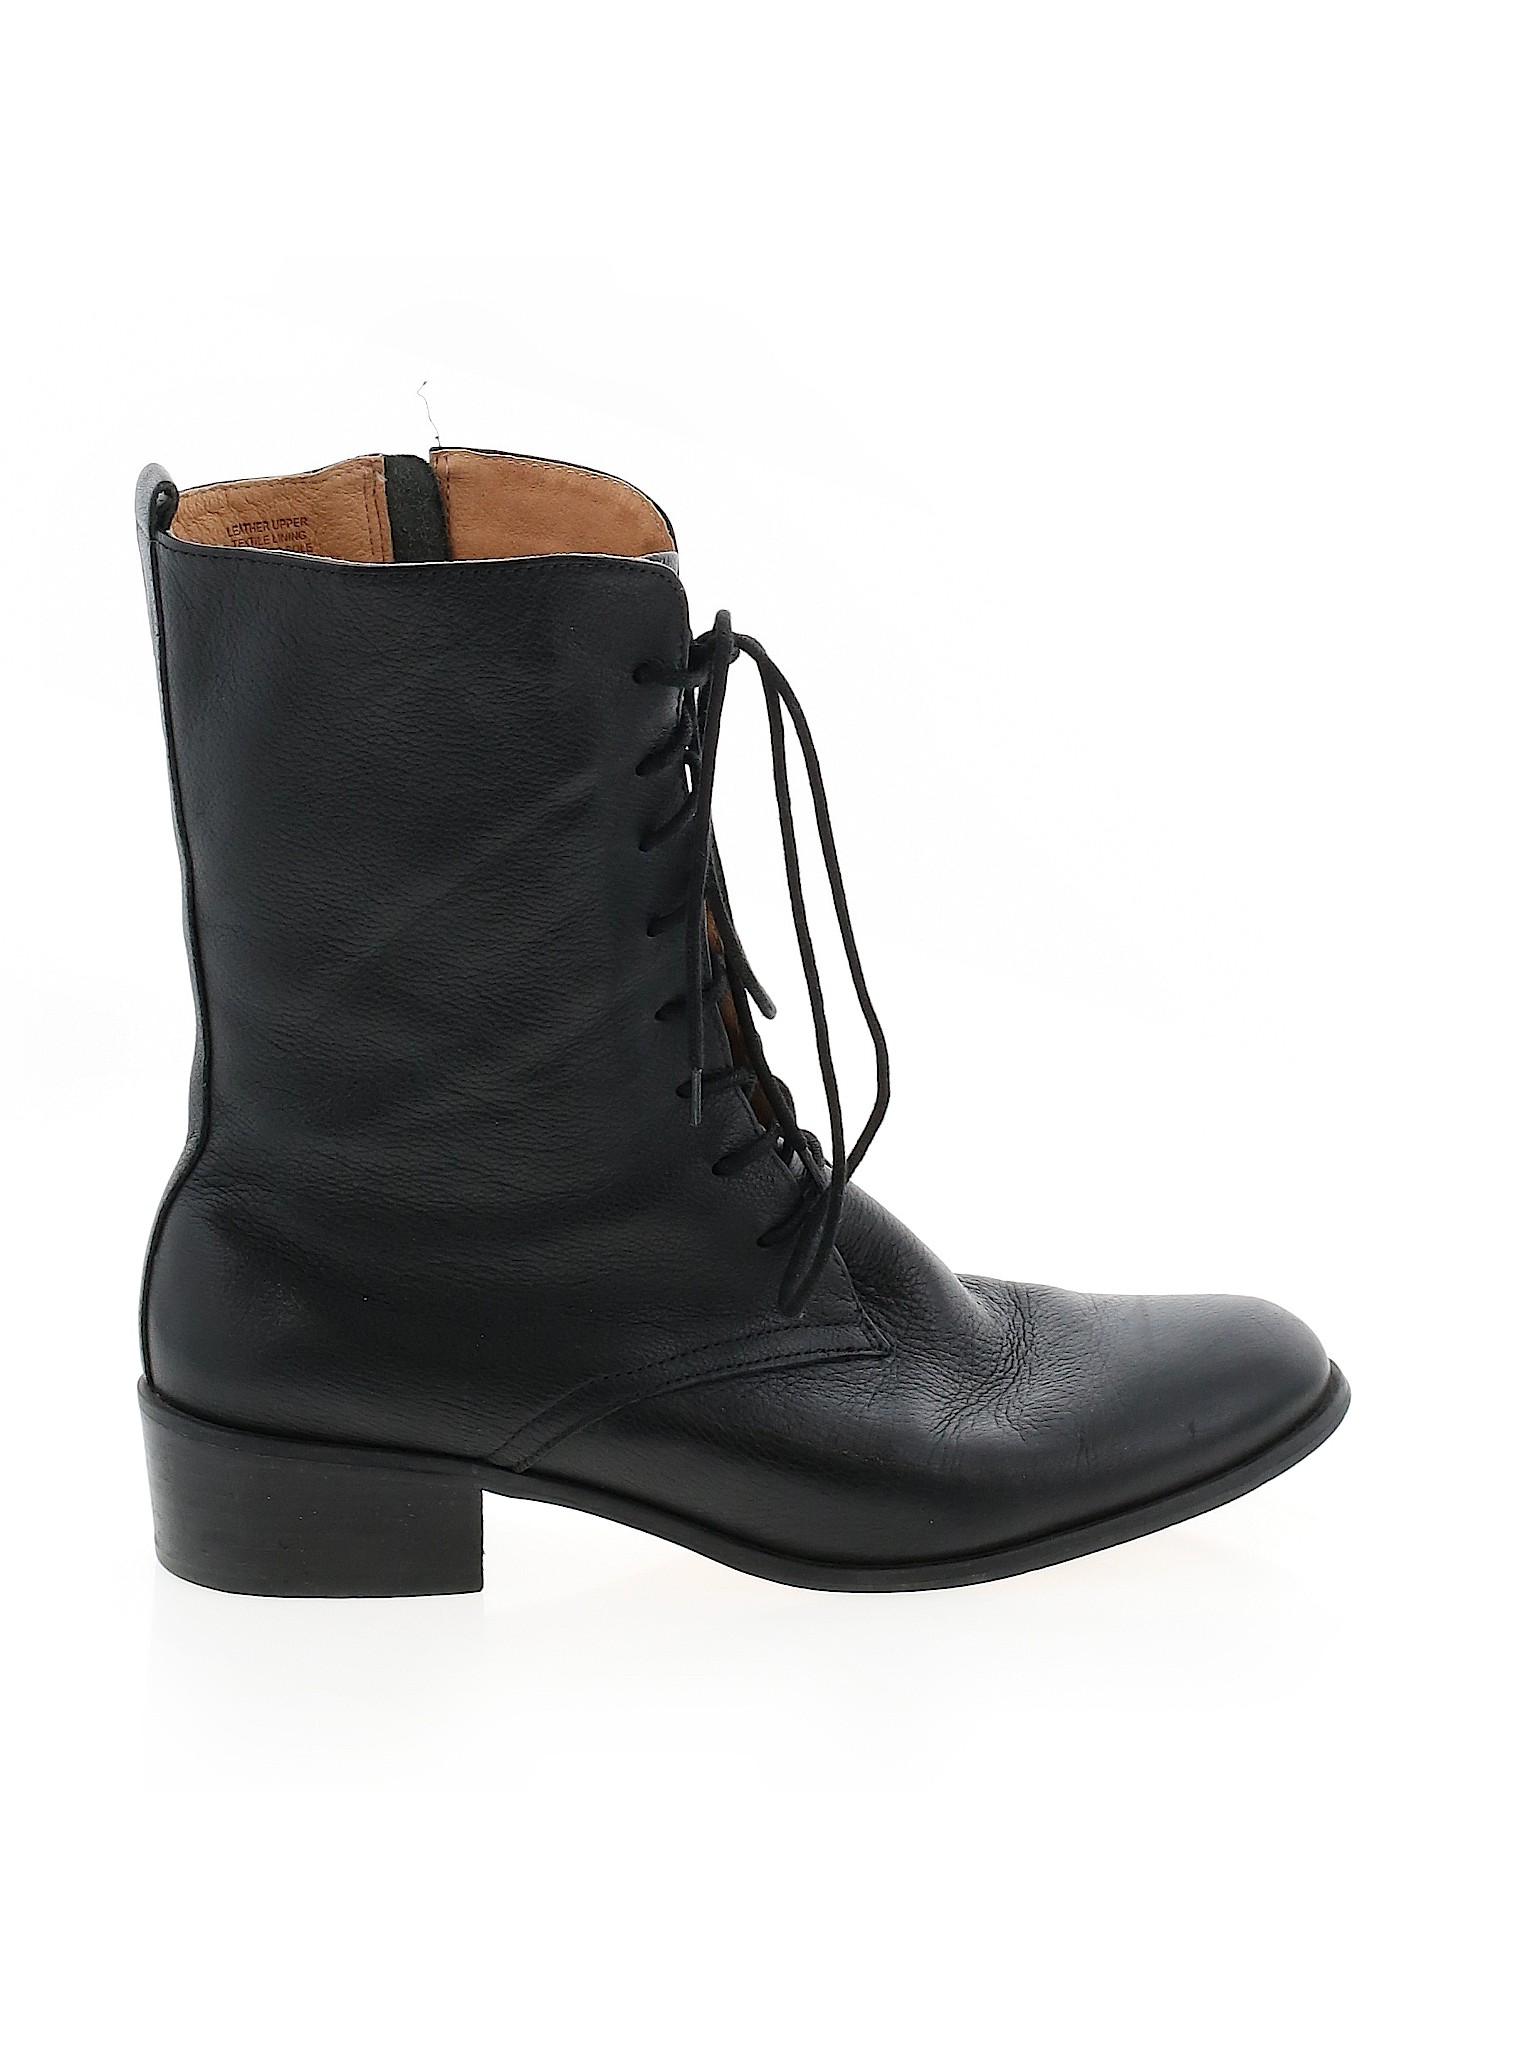 Corso Como Women Black Boots US 10 | eBay